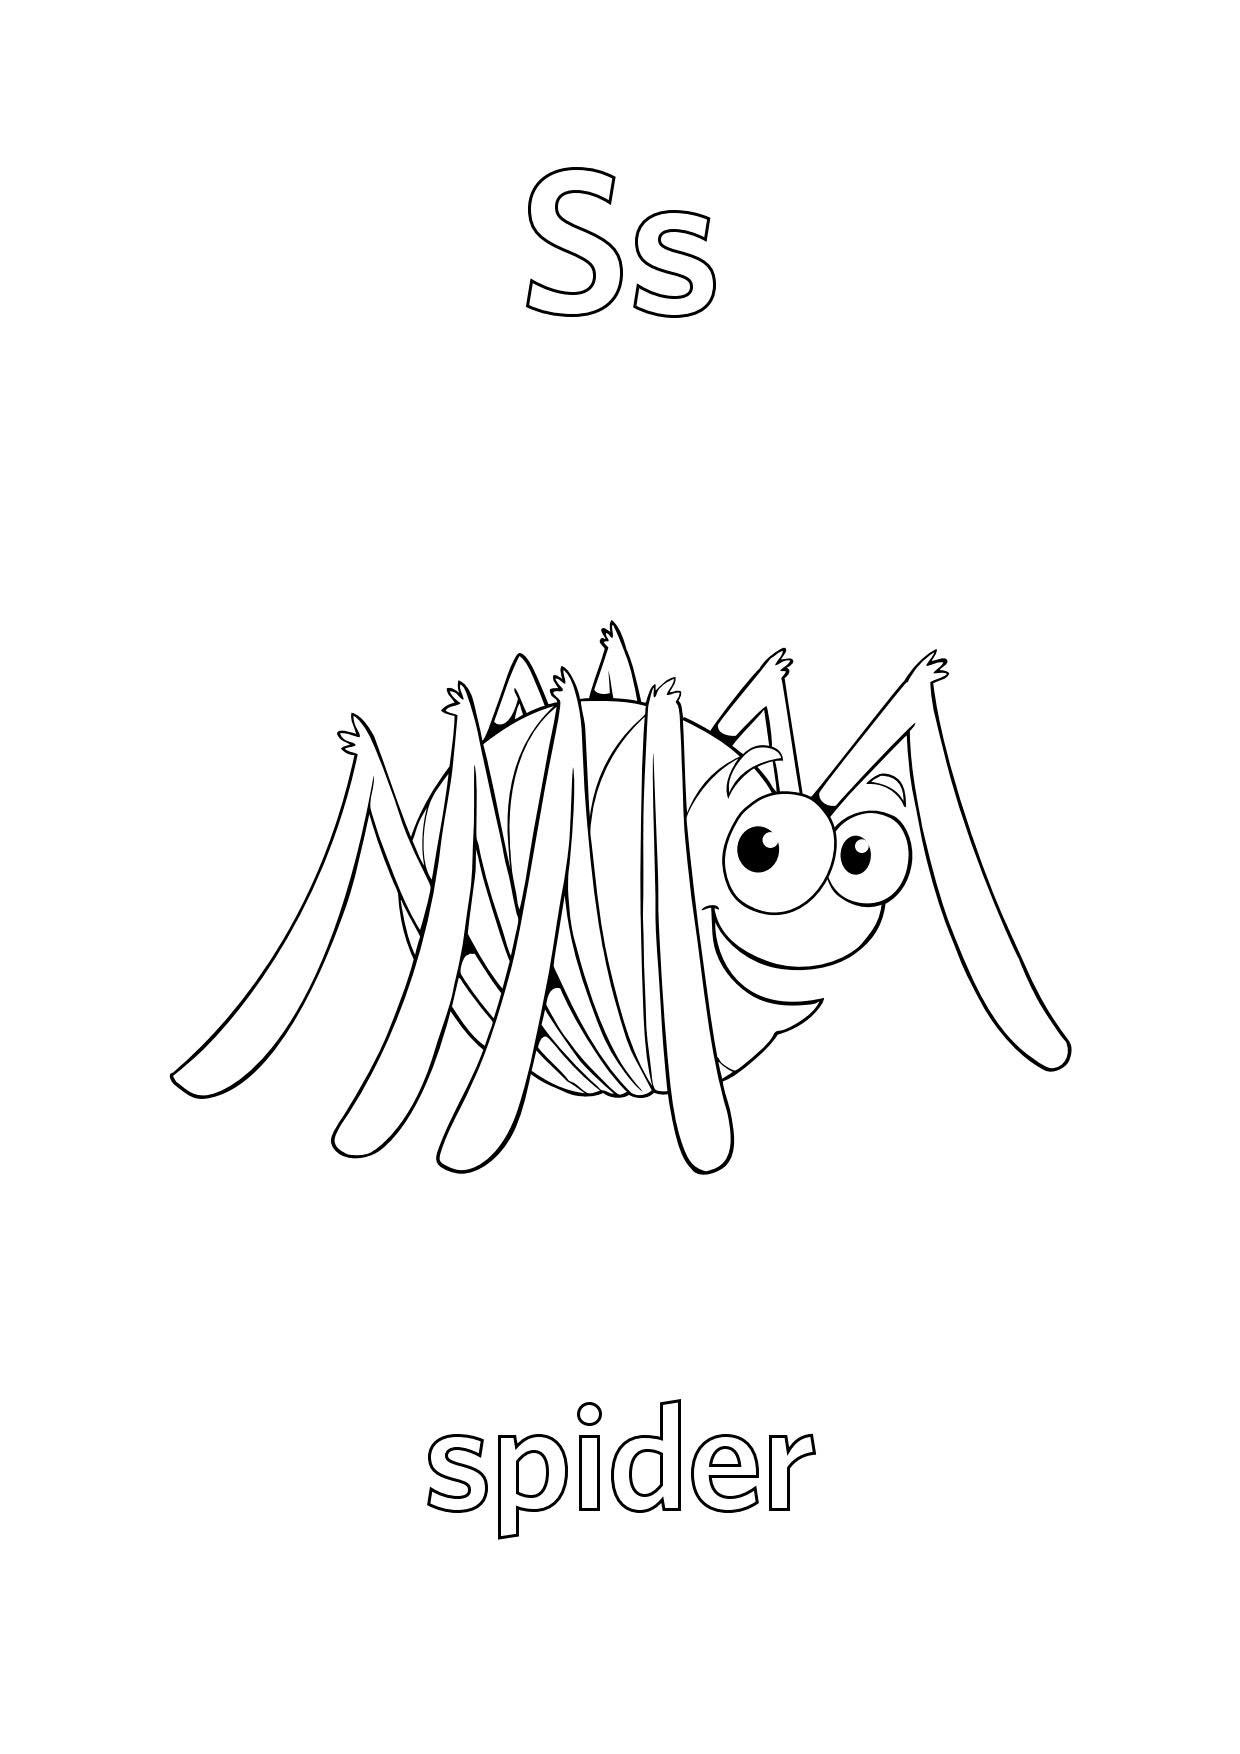 Tranh tô màu con nhện bằng chữ